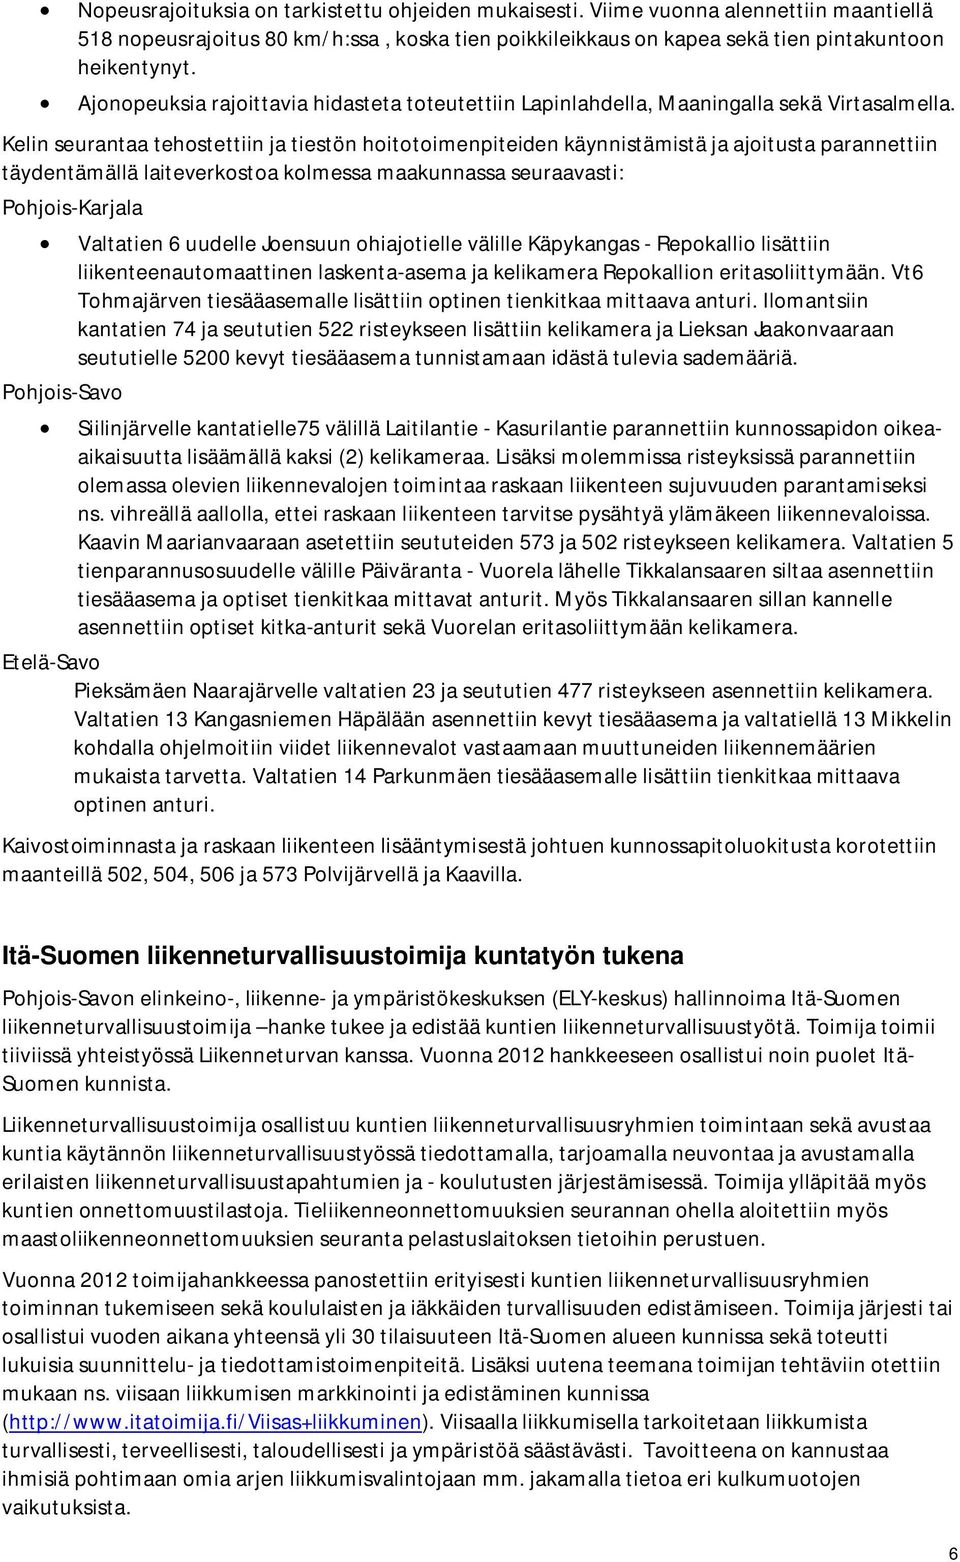 Kelin seurantaa tehostettiin ja tiestön hoitotoimenpiteiden käynnistämistä ja ajoitusta parannettiin täydentämällä laiteverkostoa kolmessa maakunnassa seuraavasti: Pohjois-Karjala Pohjois-Savo